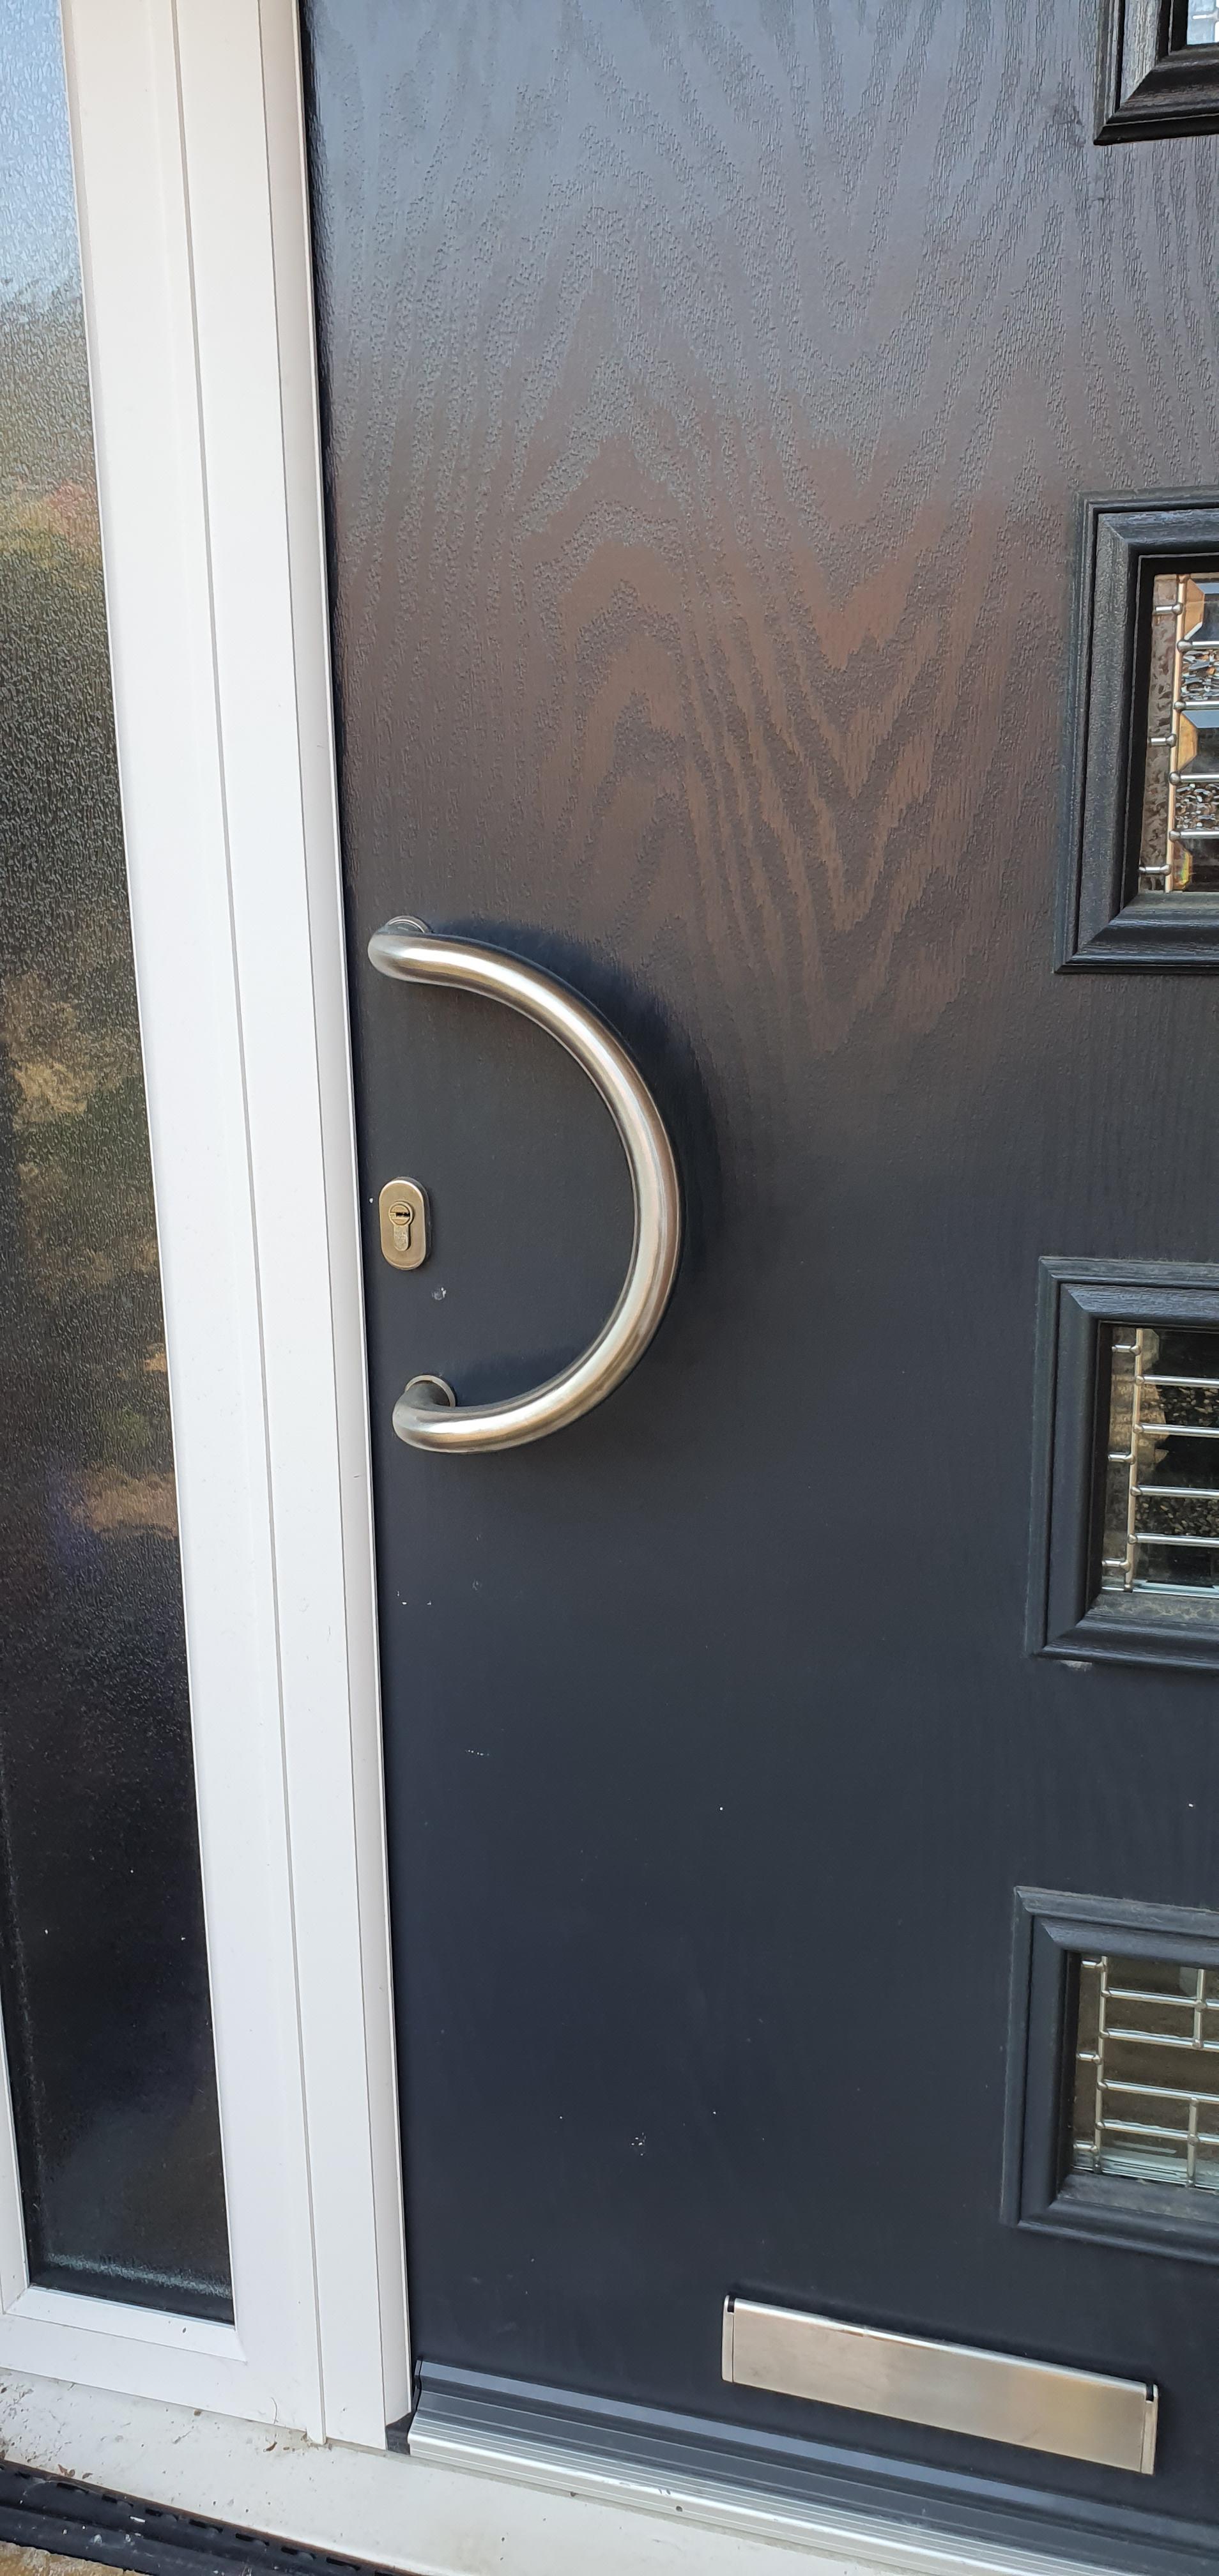 A residential door with a broken handle